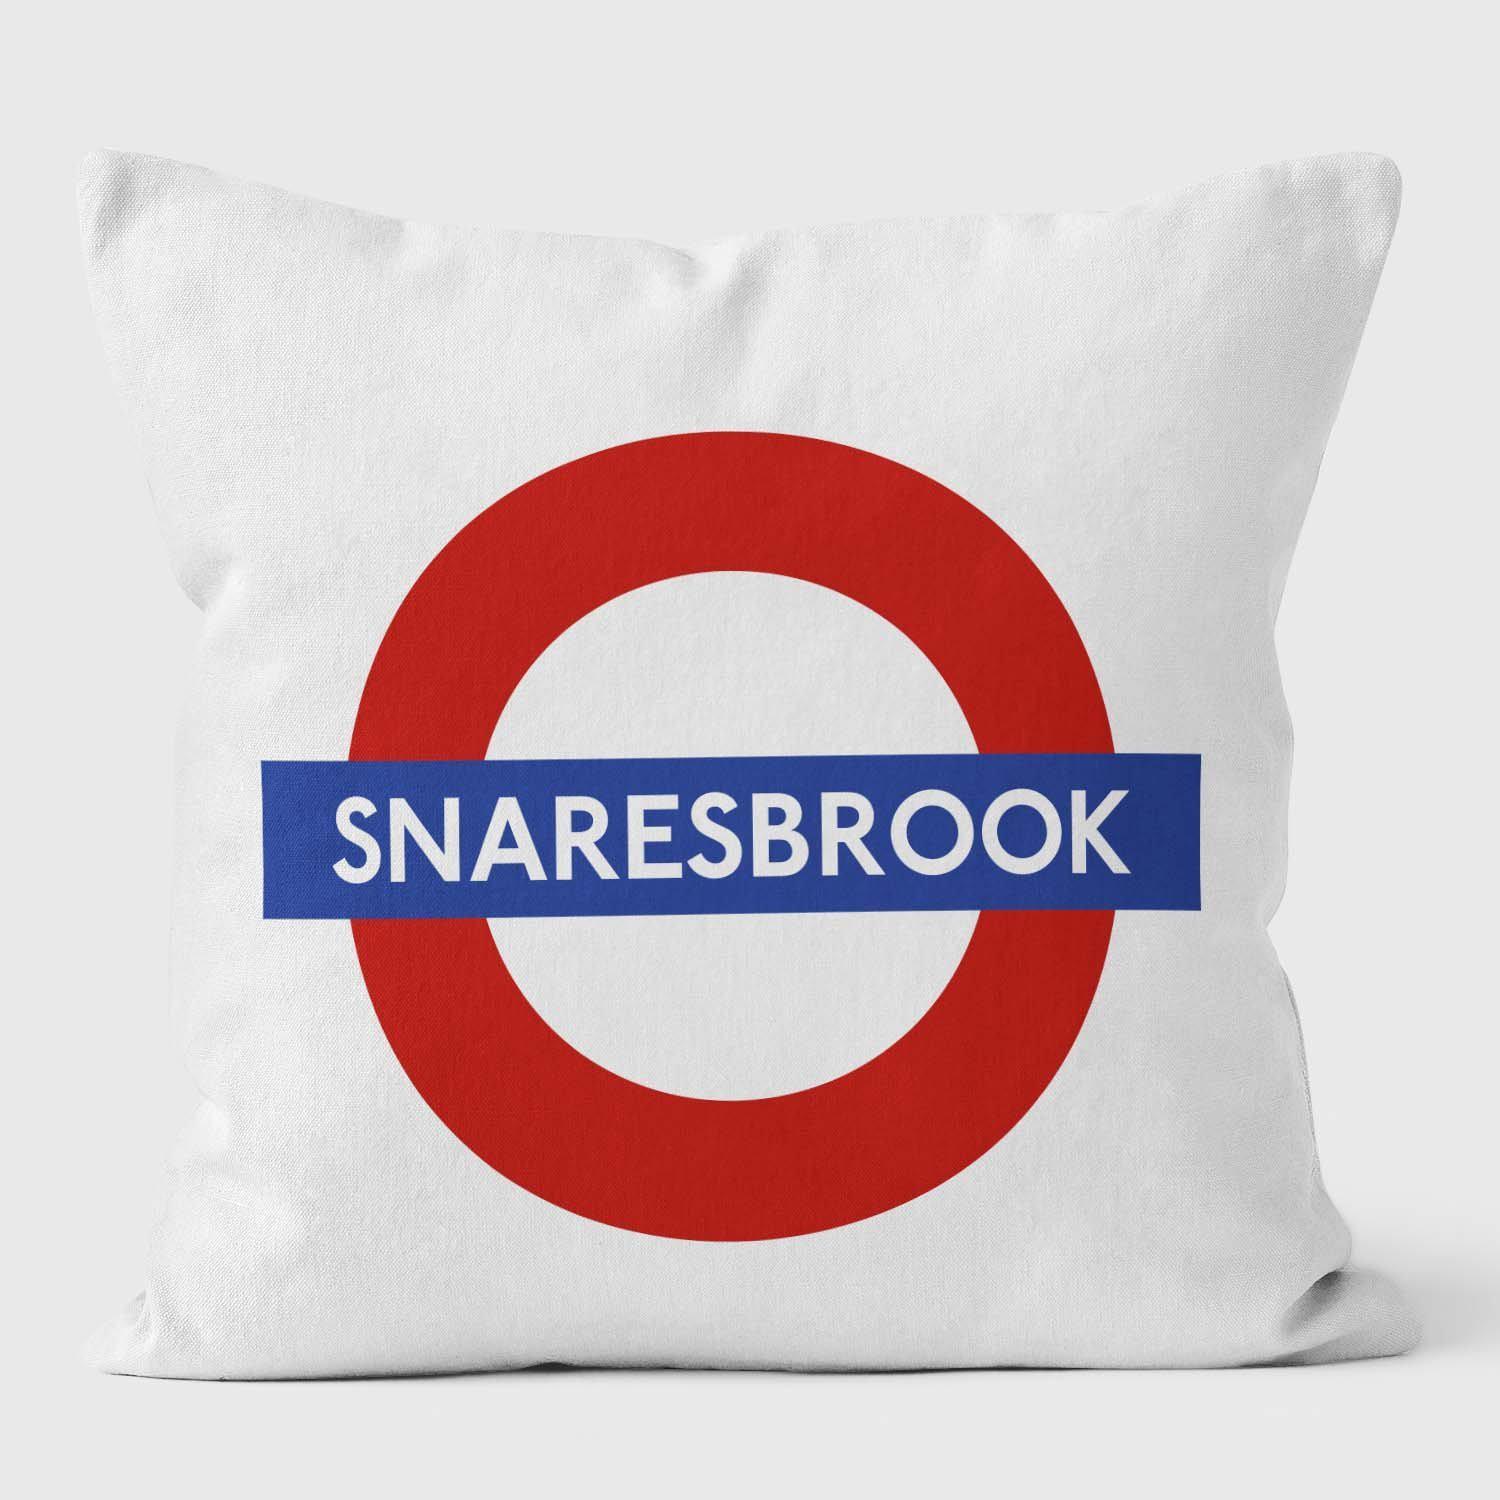 Snaresbrook London Underground Tube Station Roundel Cushion - Handmade Cushions UK - WeLoveCushions